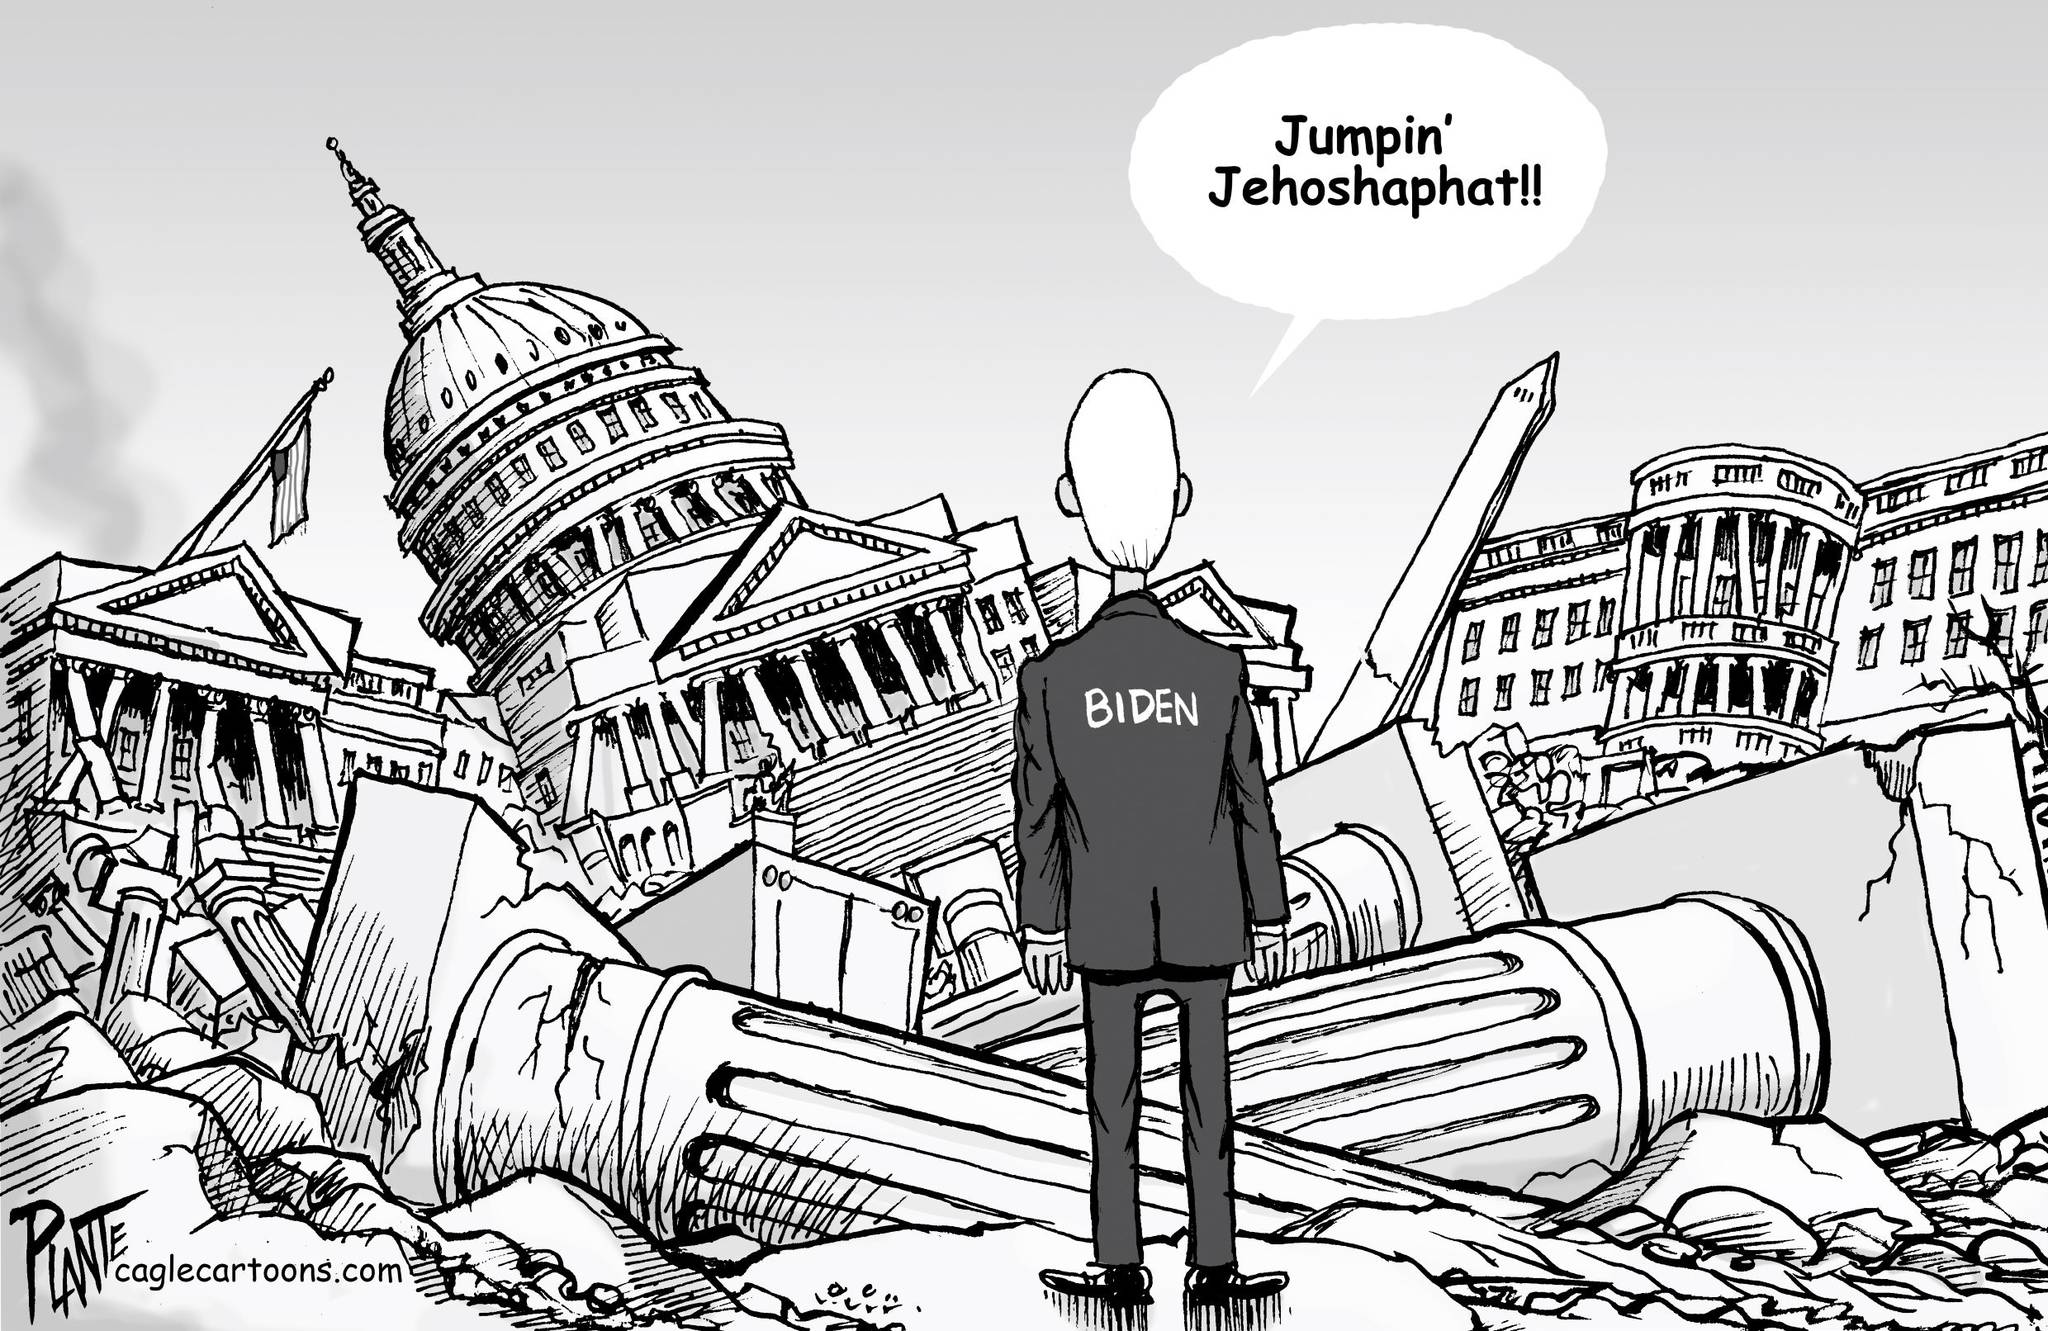 Bruce Plante, PoliticalCartoons.com